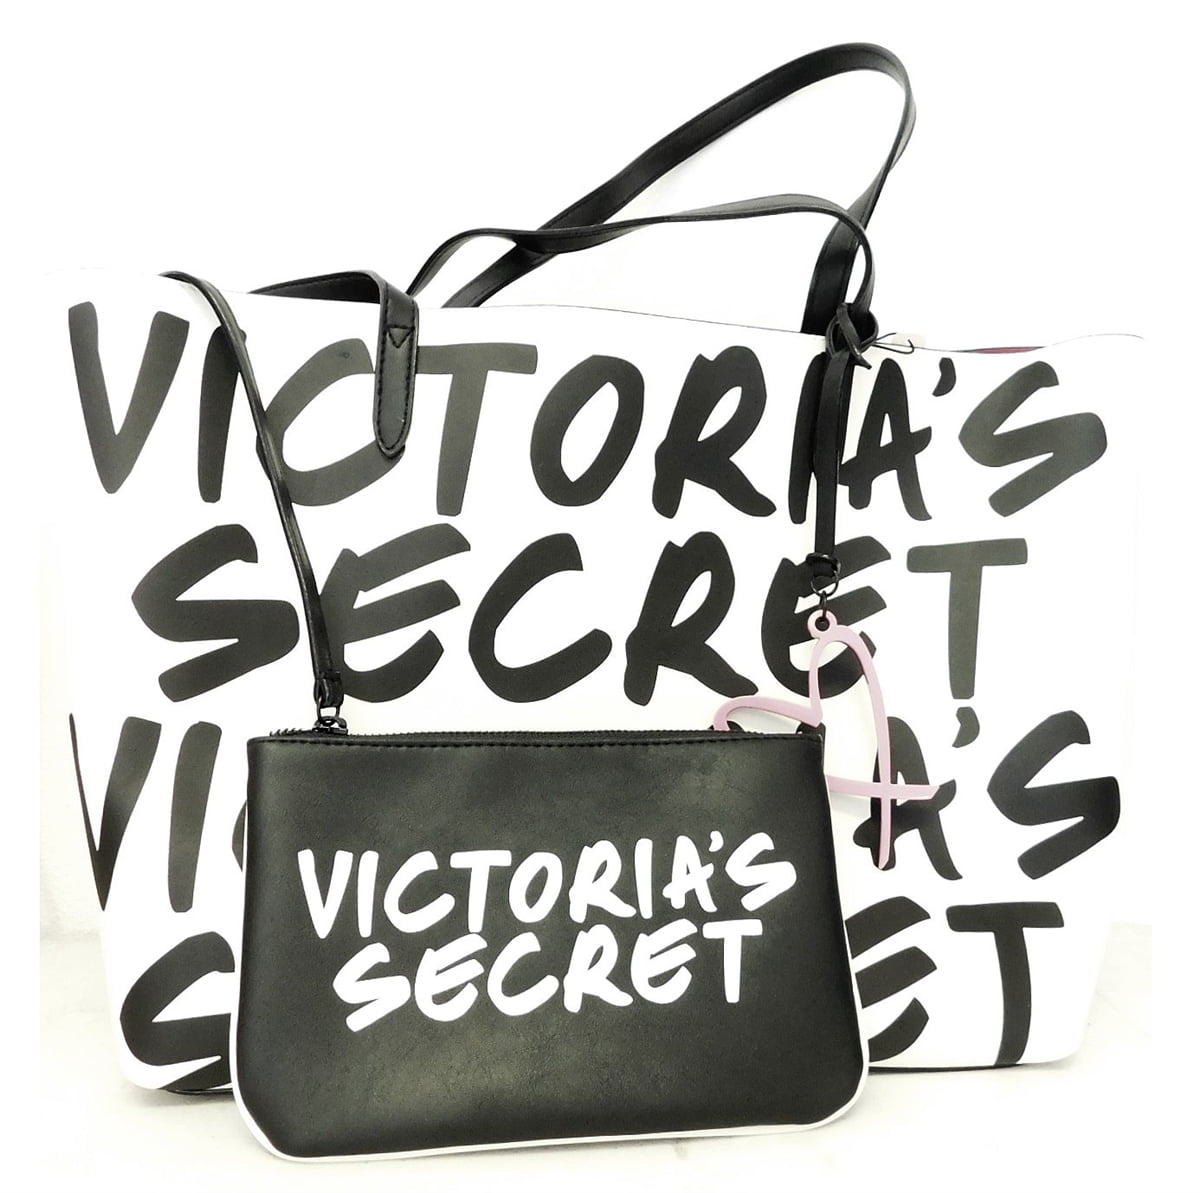 Victorias Secret Tote Bag Black Red Roses Large - Victoria's Secret Bag